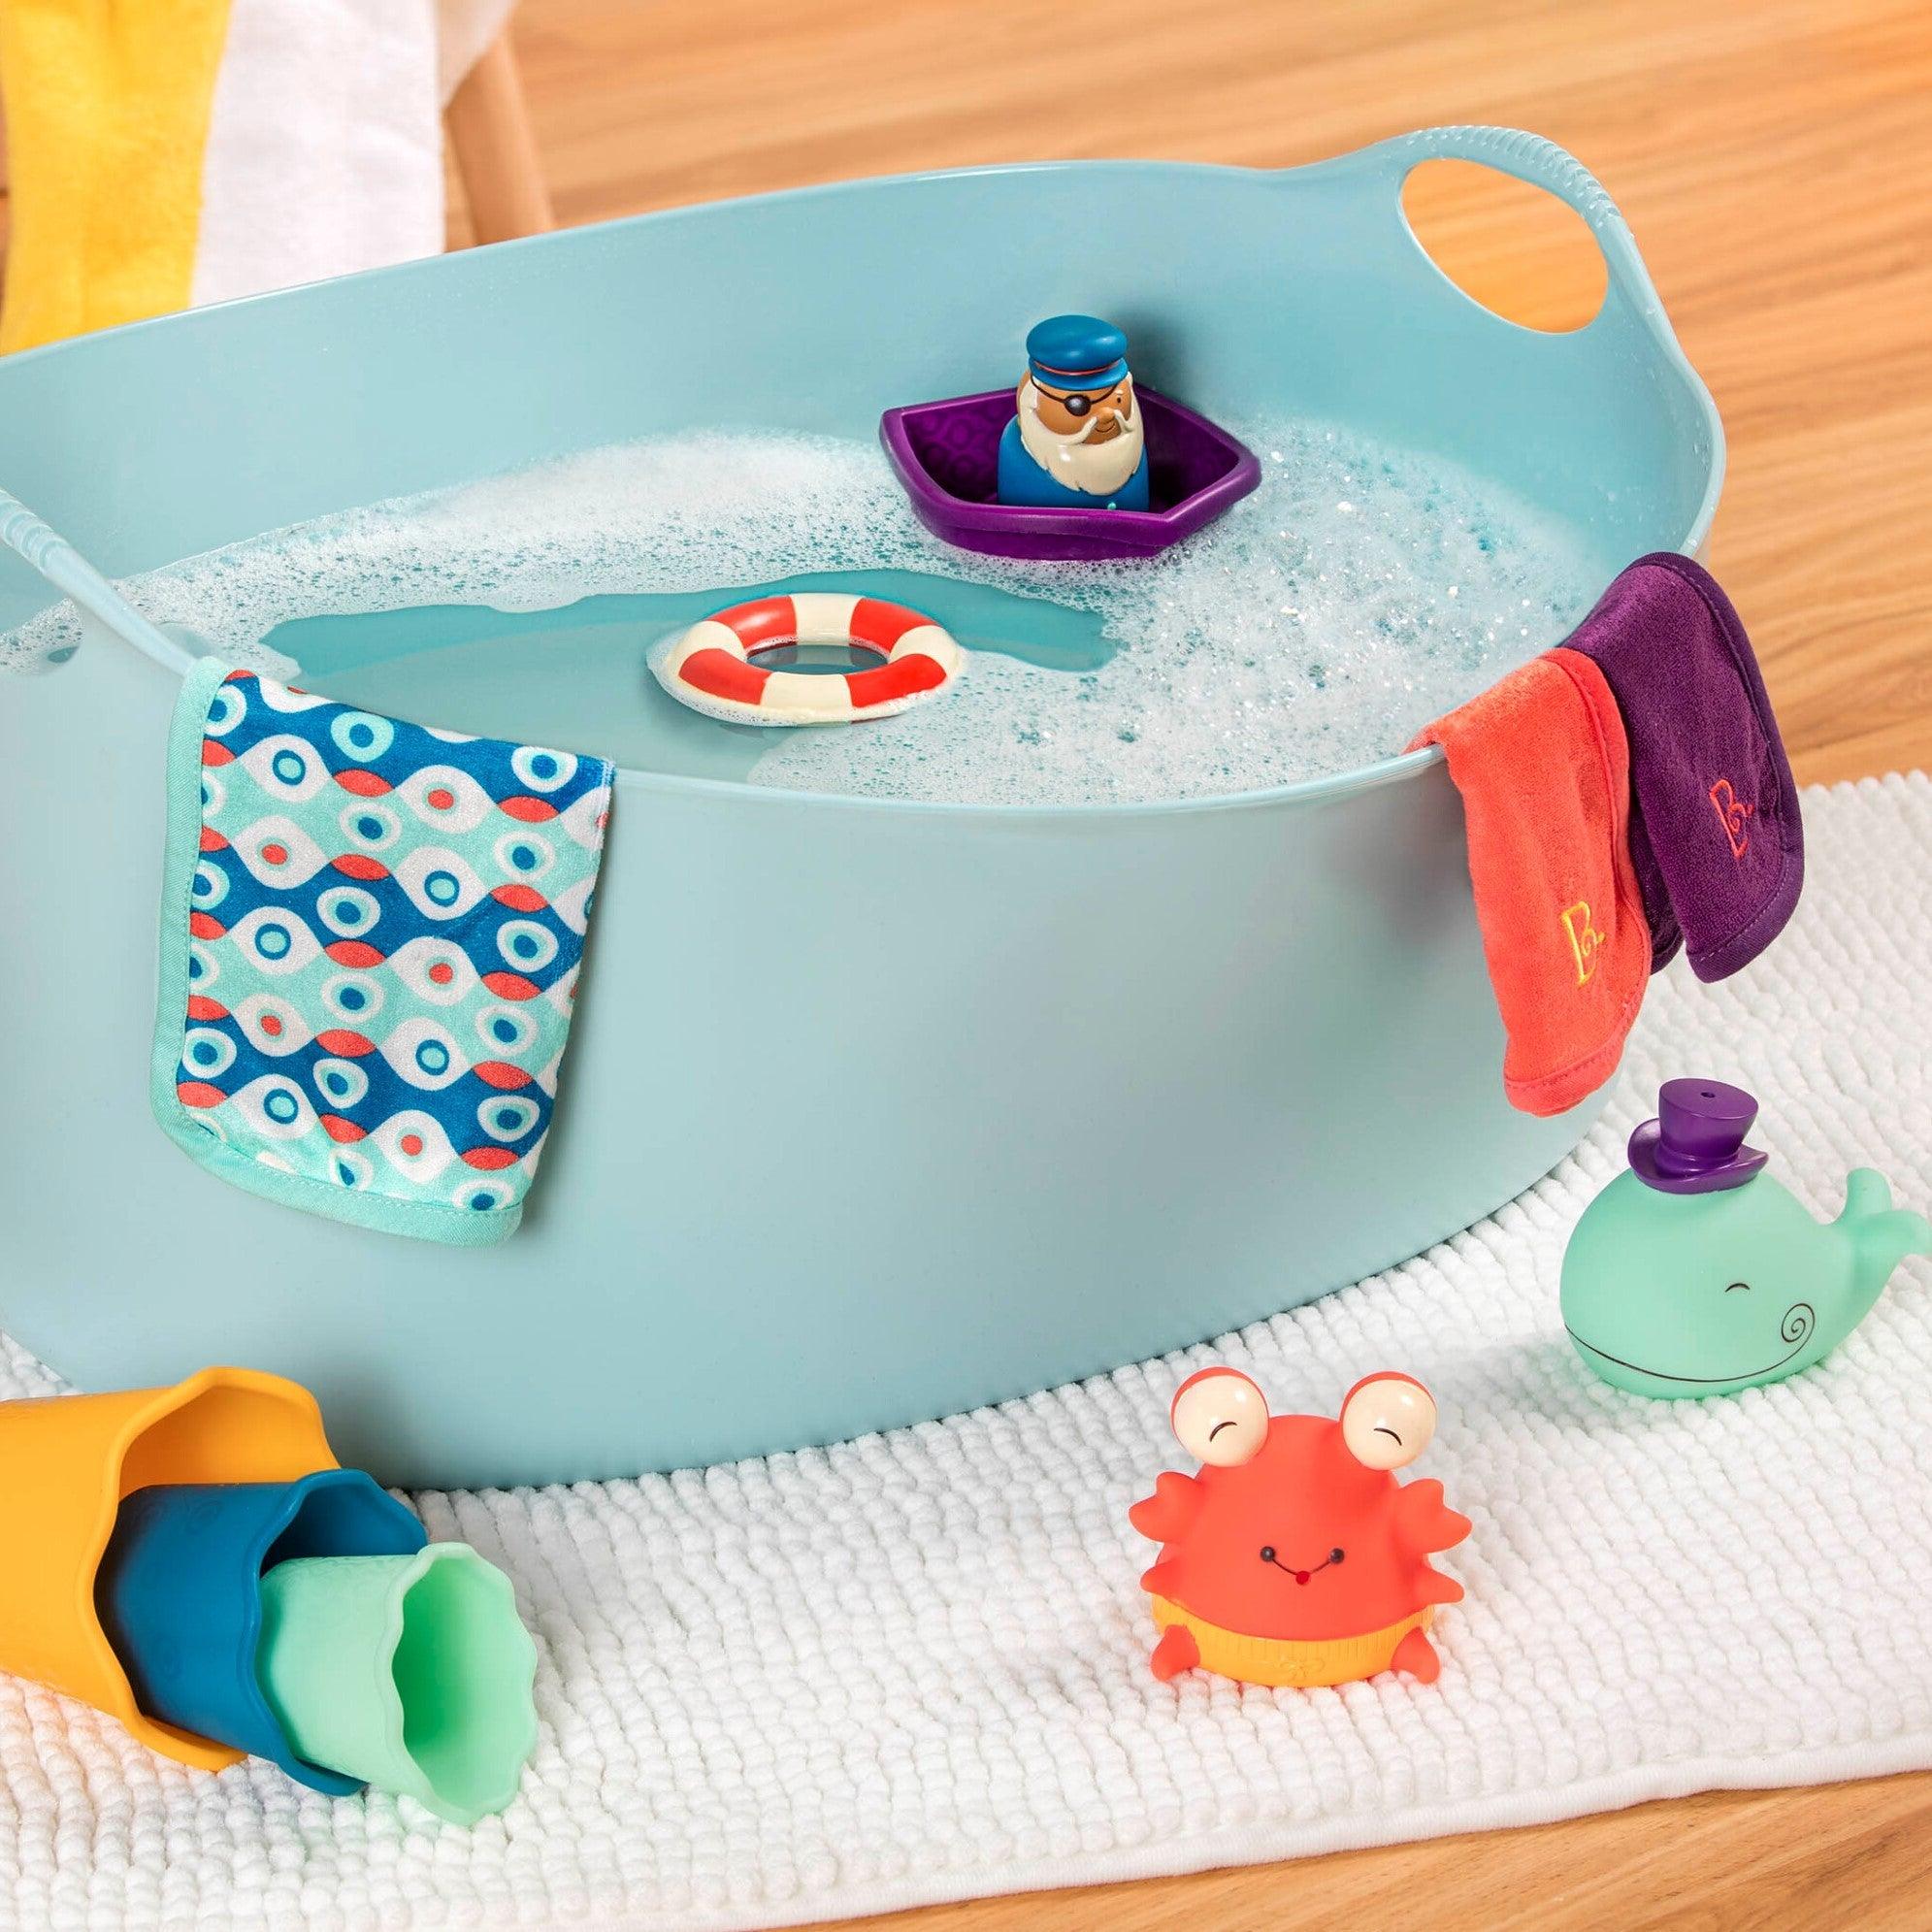 B. Toys: zestaw prezentowy do kąpieli dla niemowląt Wee B. Splashy - Noski Noski